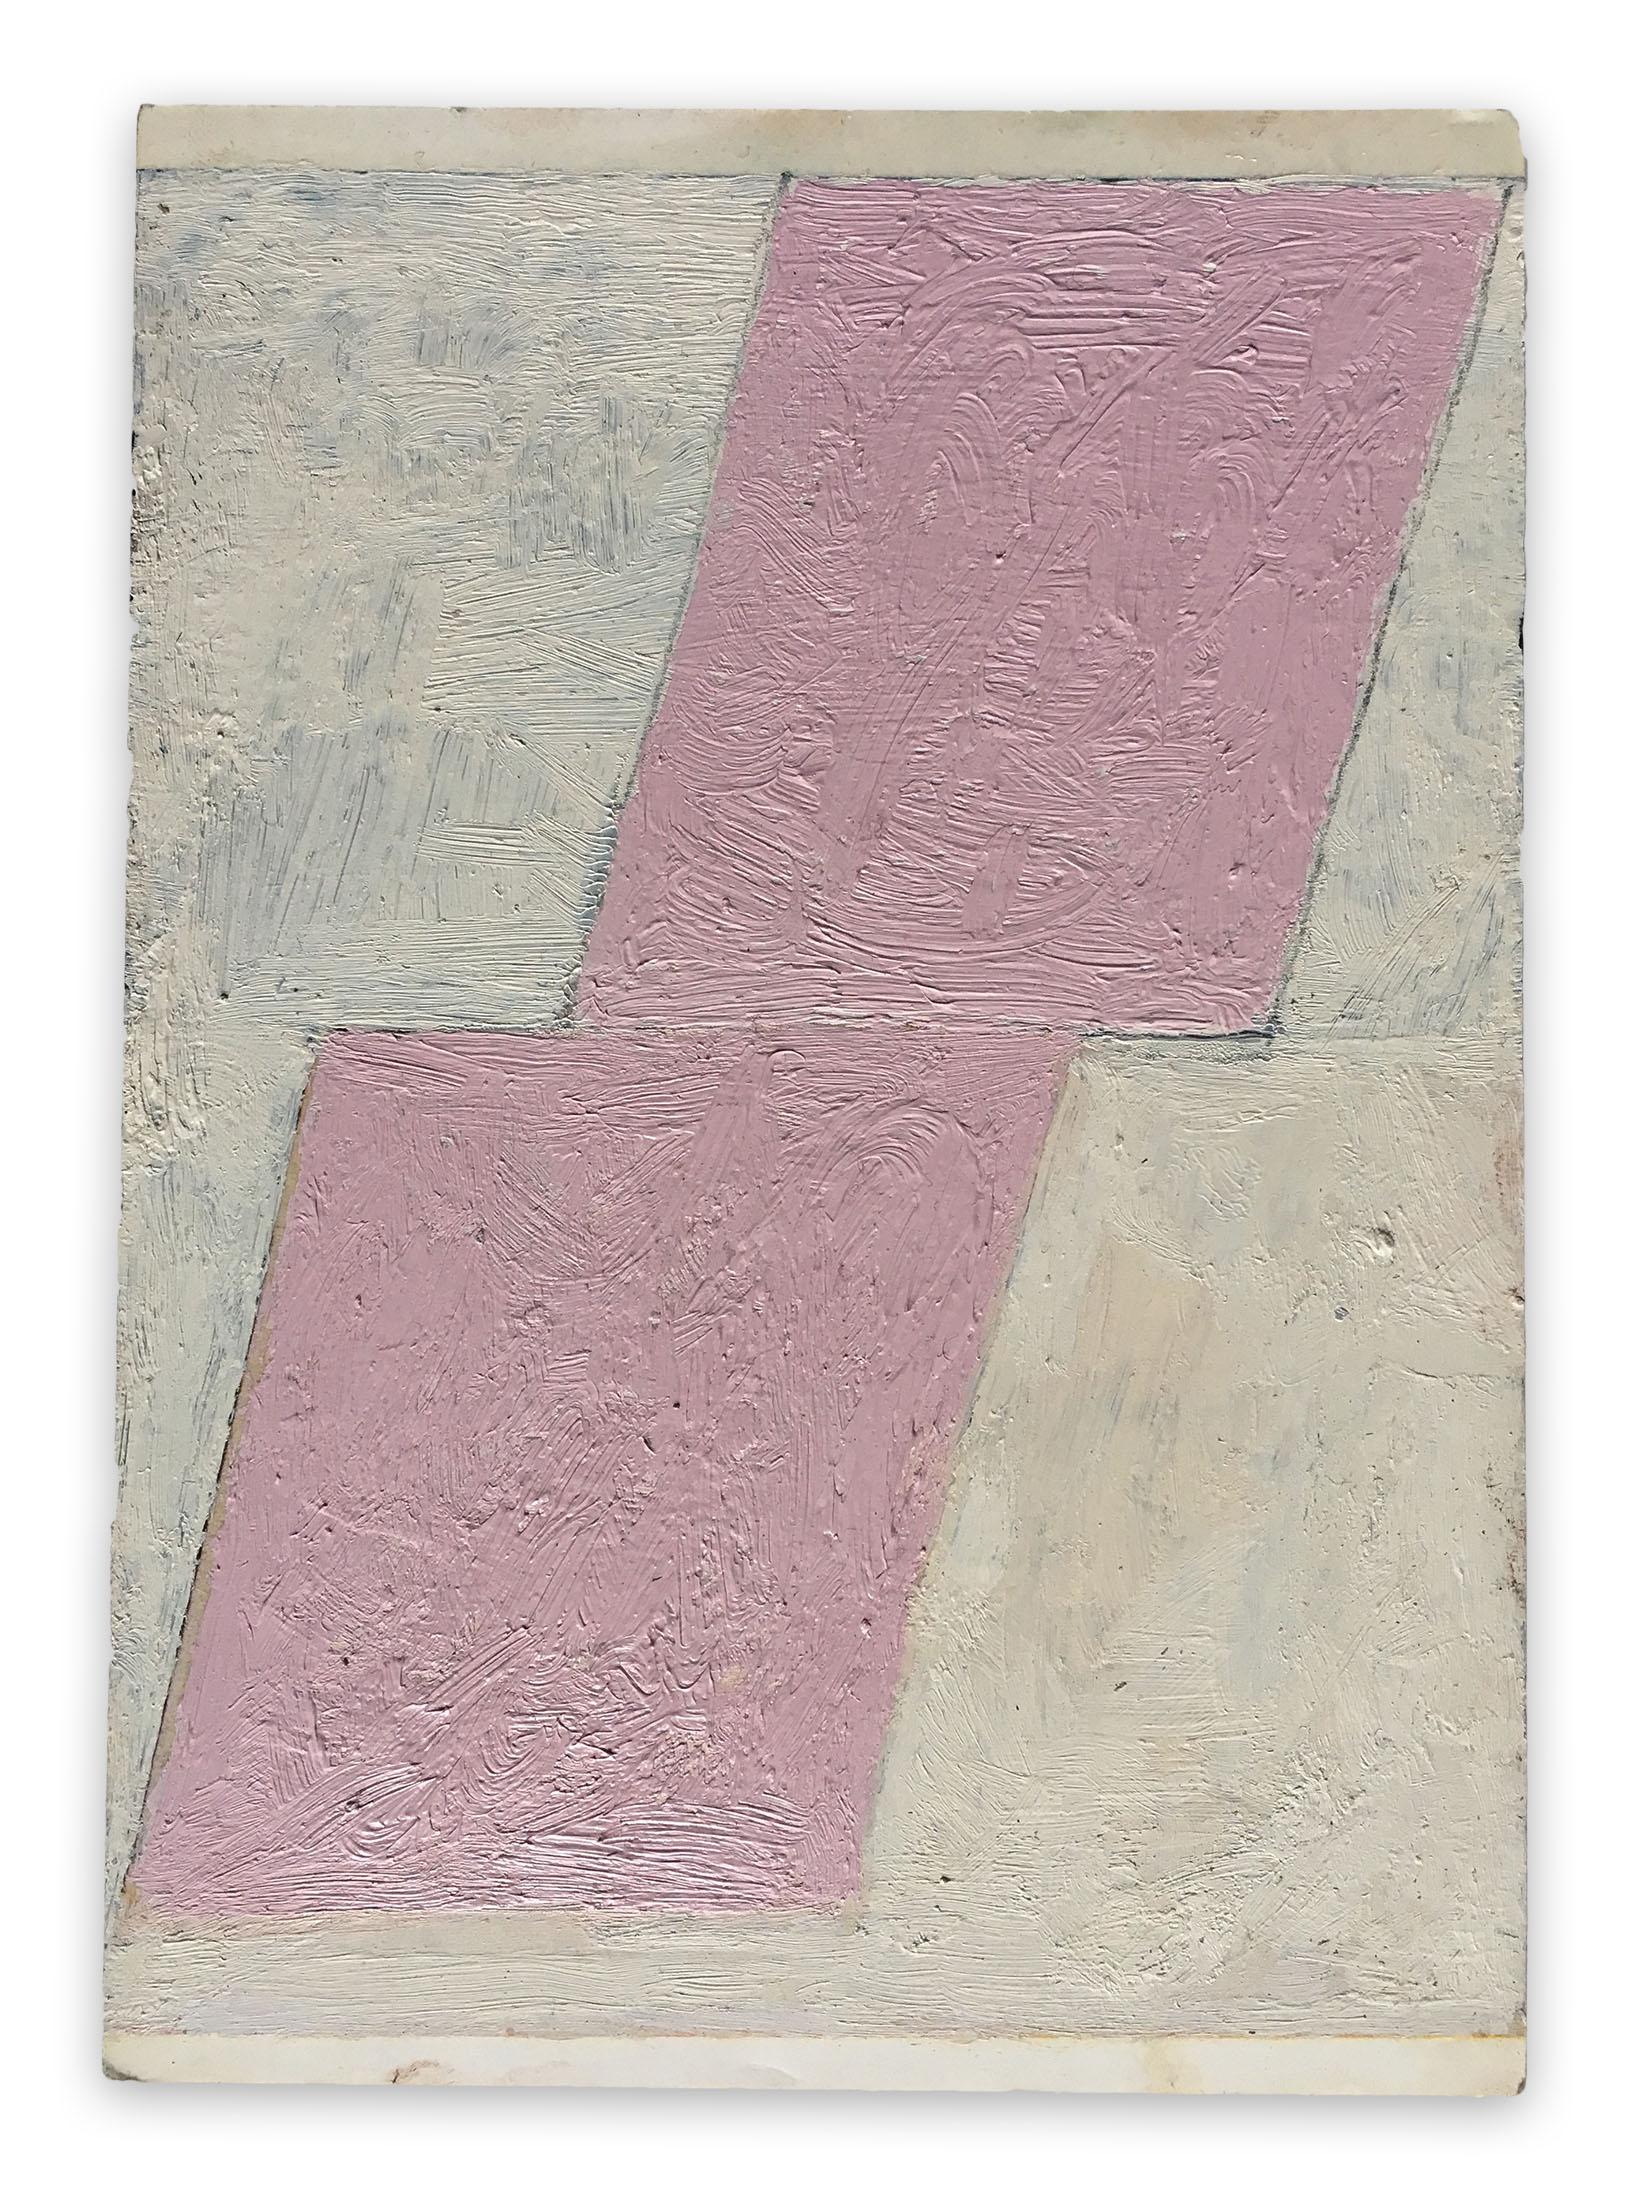 Abstract Painting Fieroza Doorsen  - Sans titre 2010 (peinture abstraite)